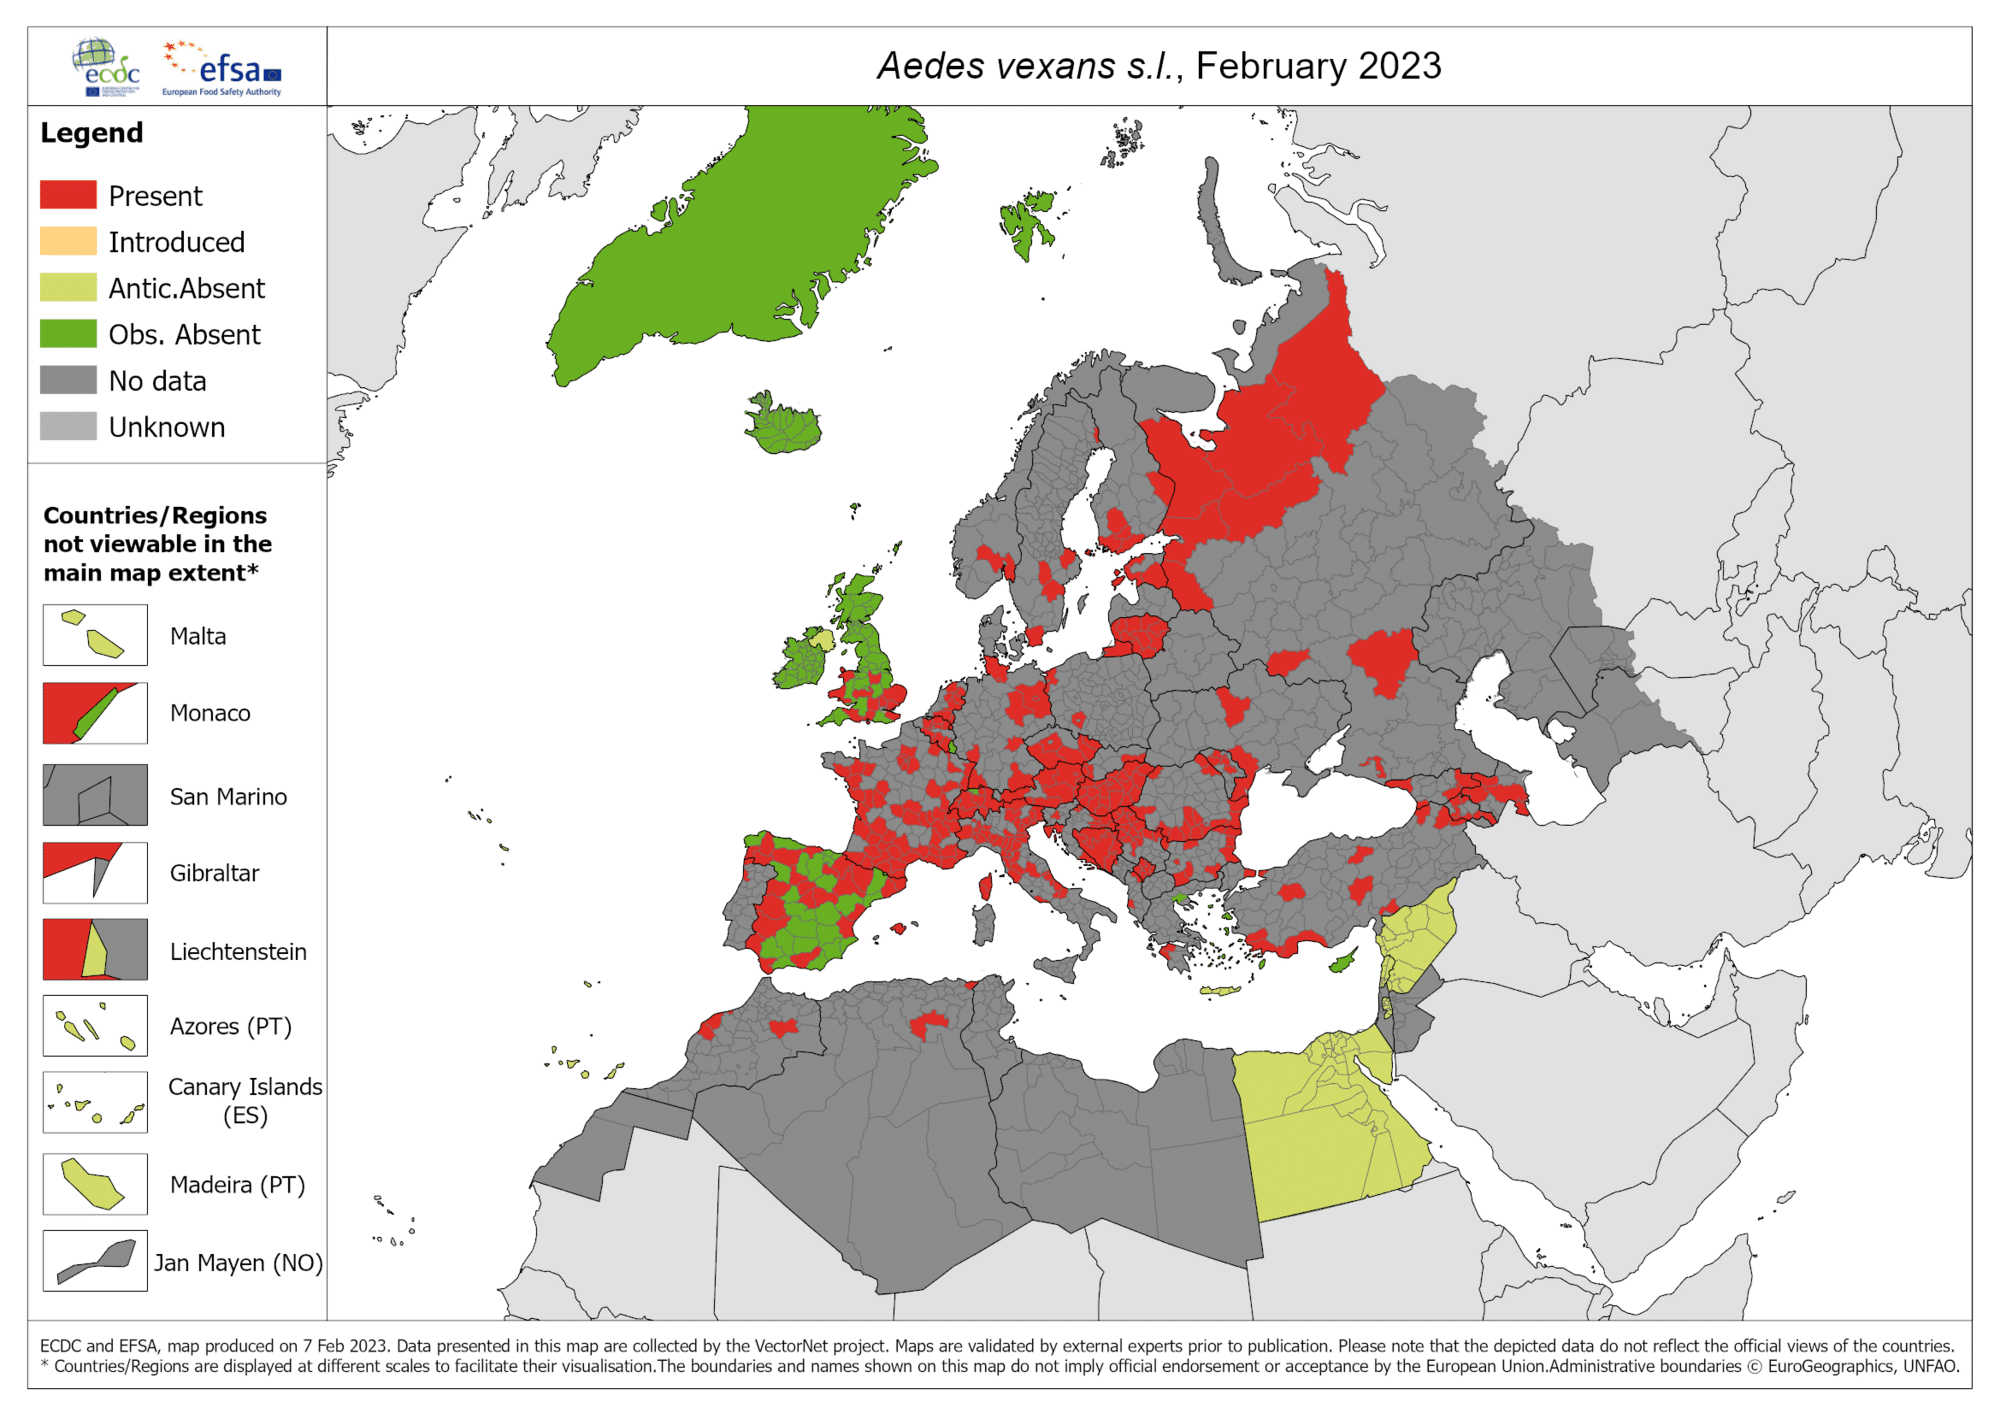 Diffusione zanzara aedes vexans in europa